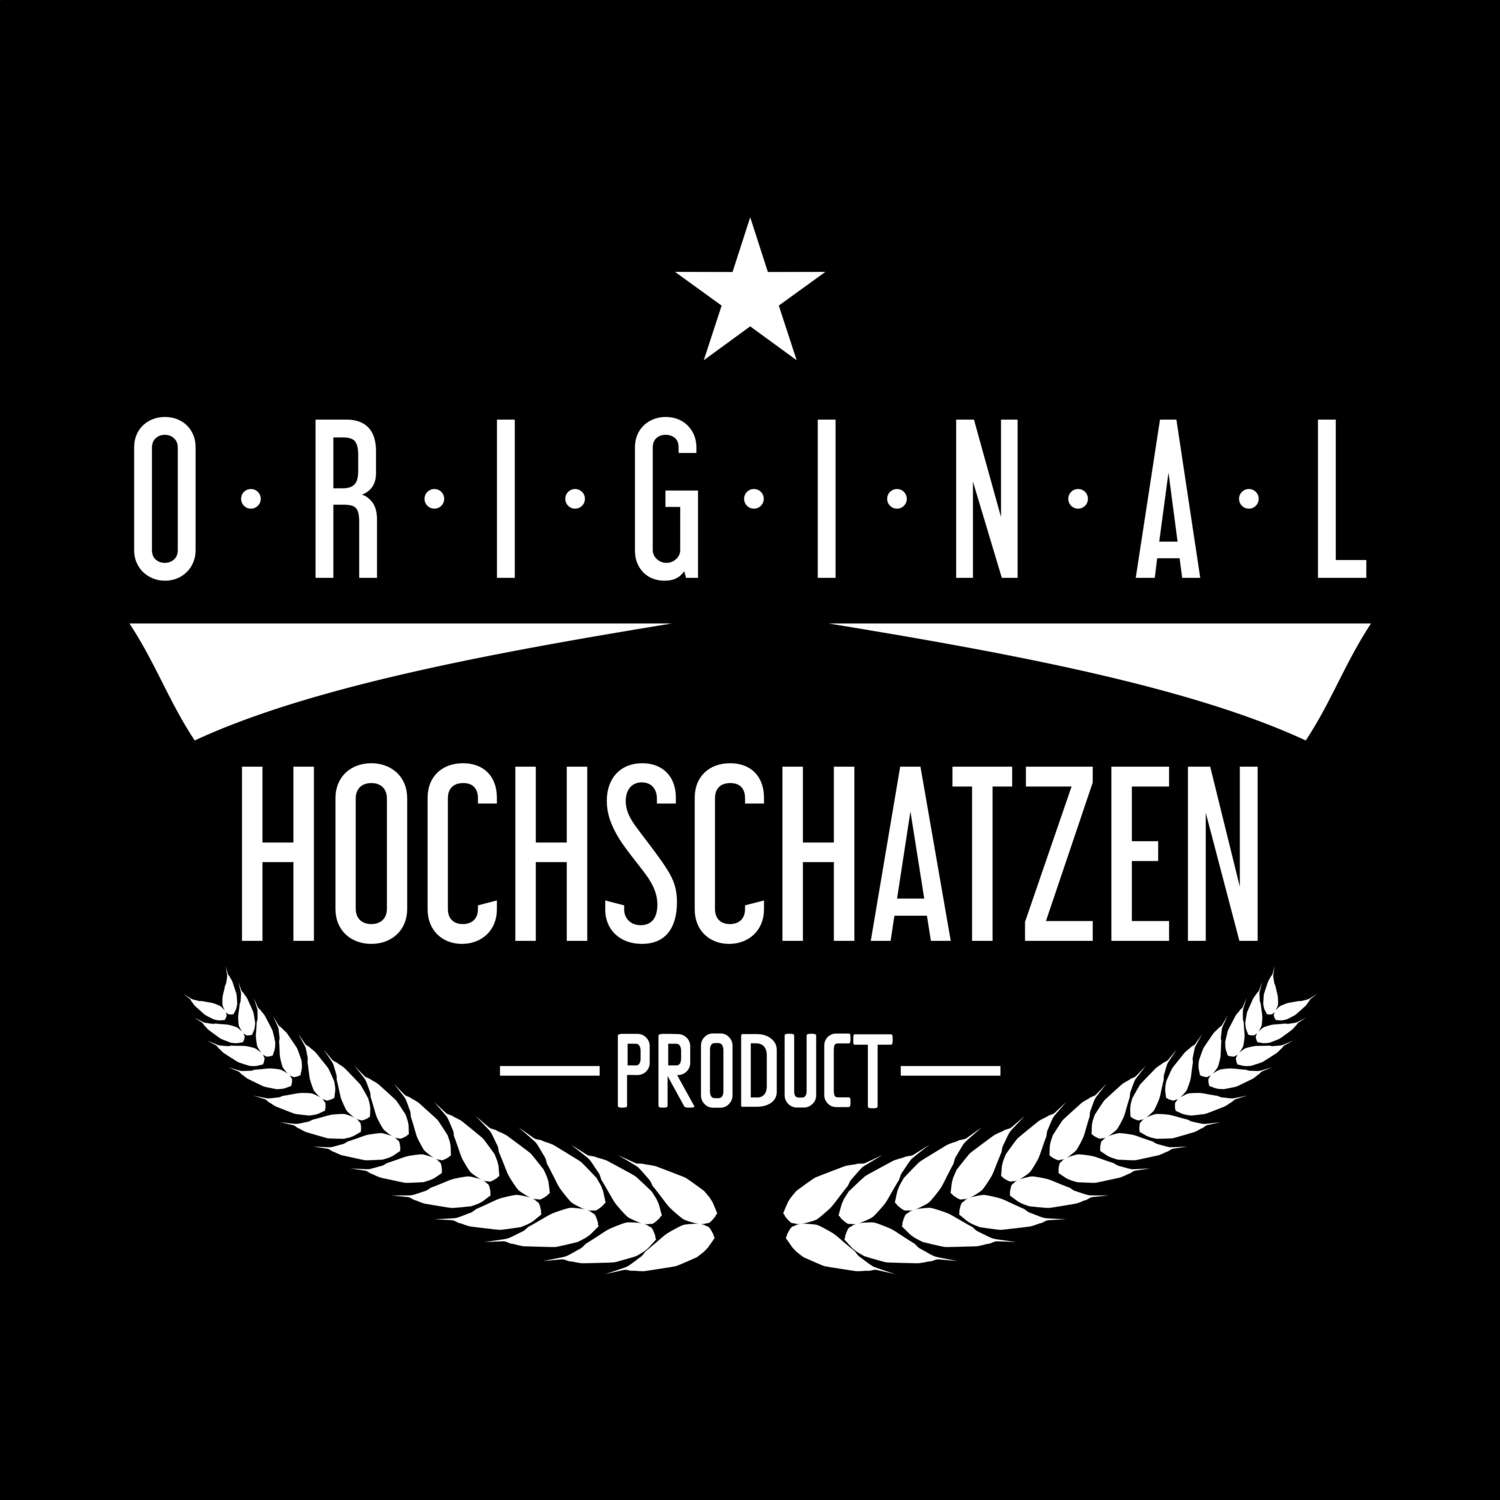 Hochschatzen T-Shirt »Original Product«